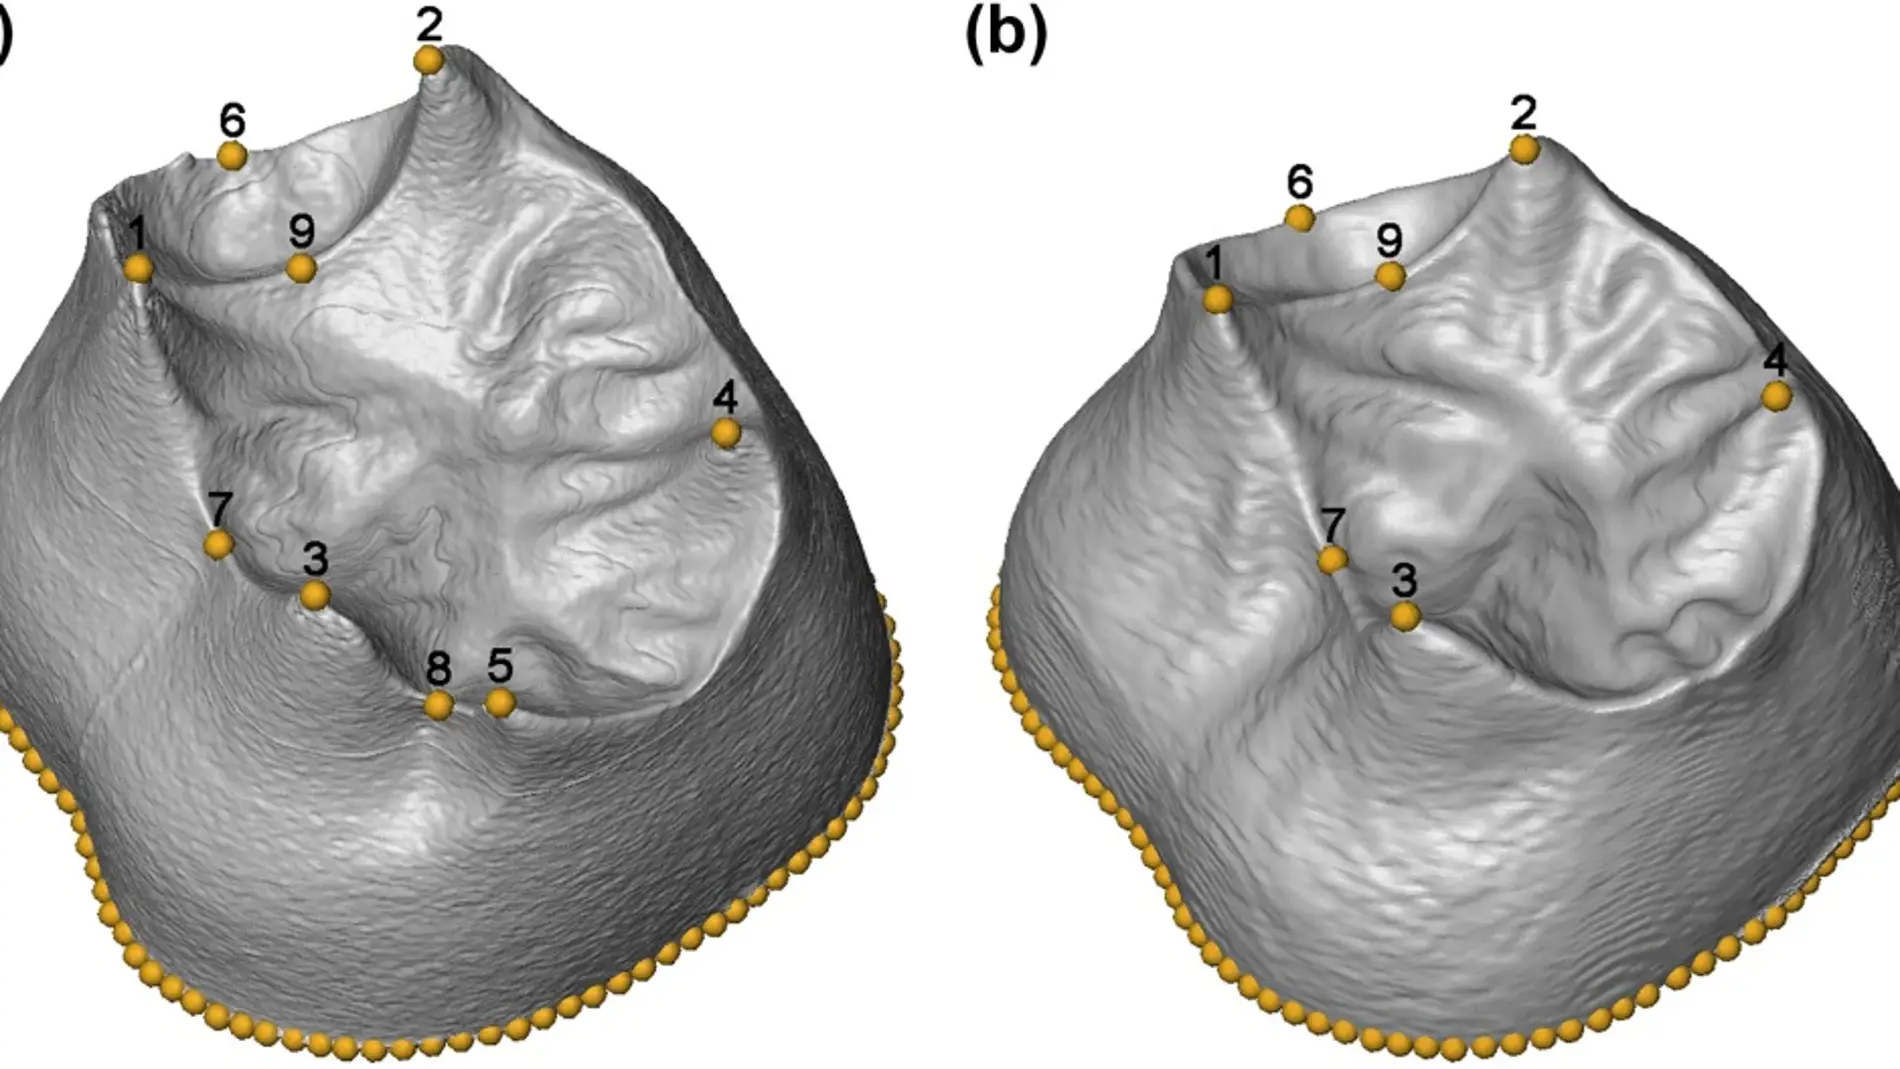 Primer estudio morfologico en 3D de los molares hallados en la Sima de los Huesos